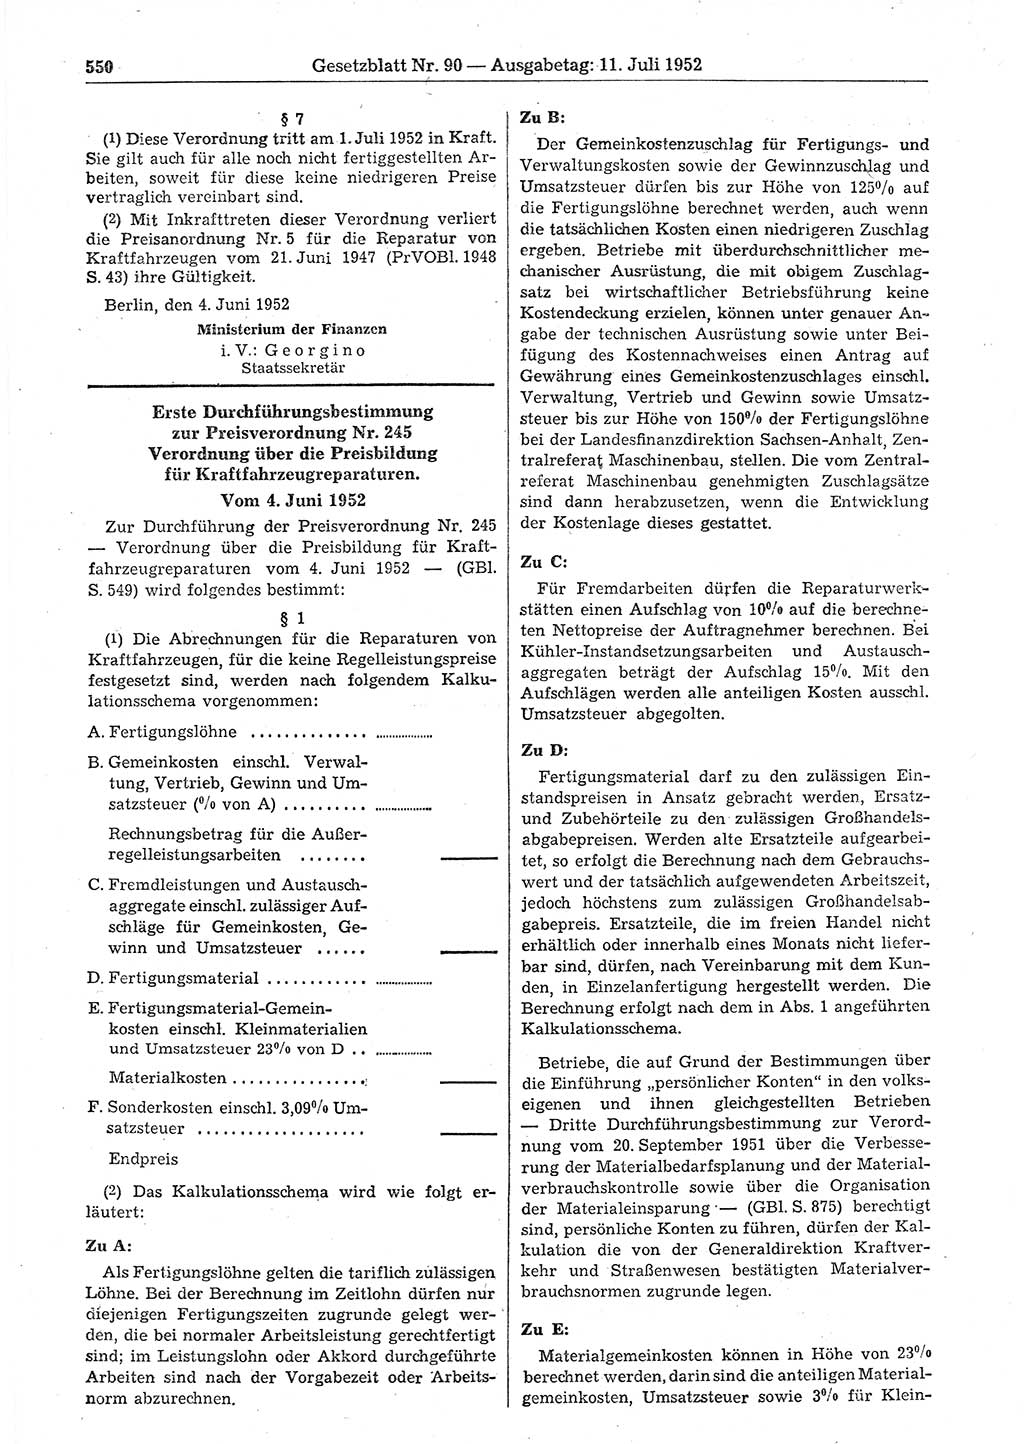 Gesetzblatt (GBl.) der Deutschen Demokratischen Republik (DDR) 1952, Seite 550 (GBl. DDR 1952, S. 550)